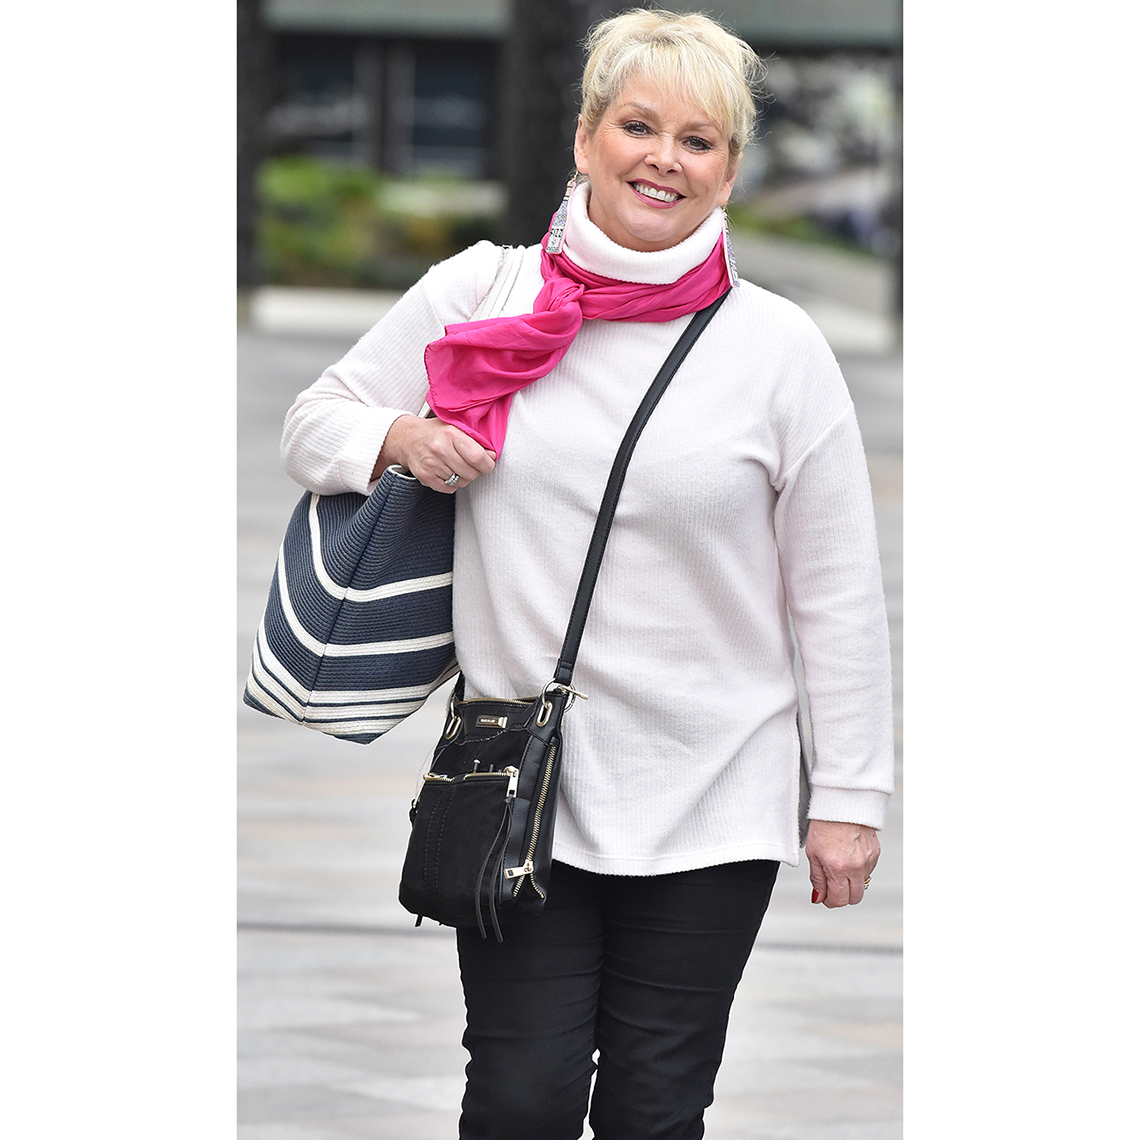 Cheryl Baker luce un bolso plano cruzado con compartimientos de cremallera 